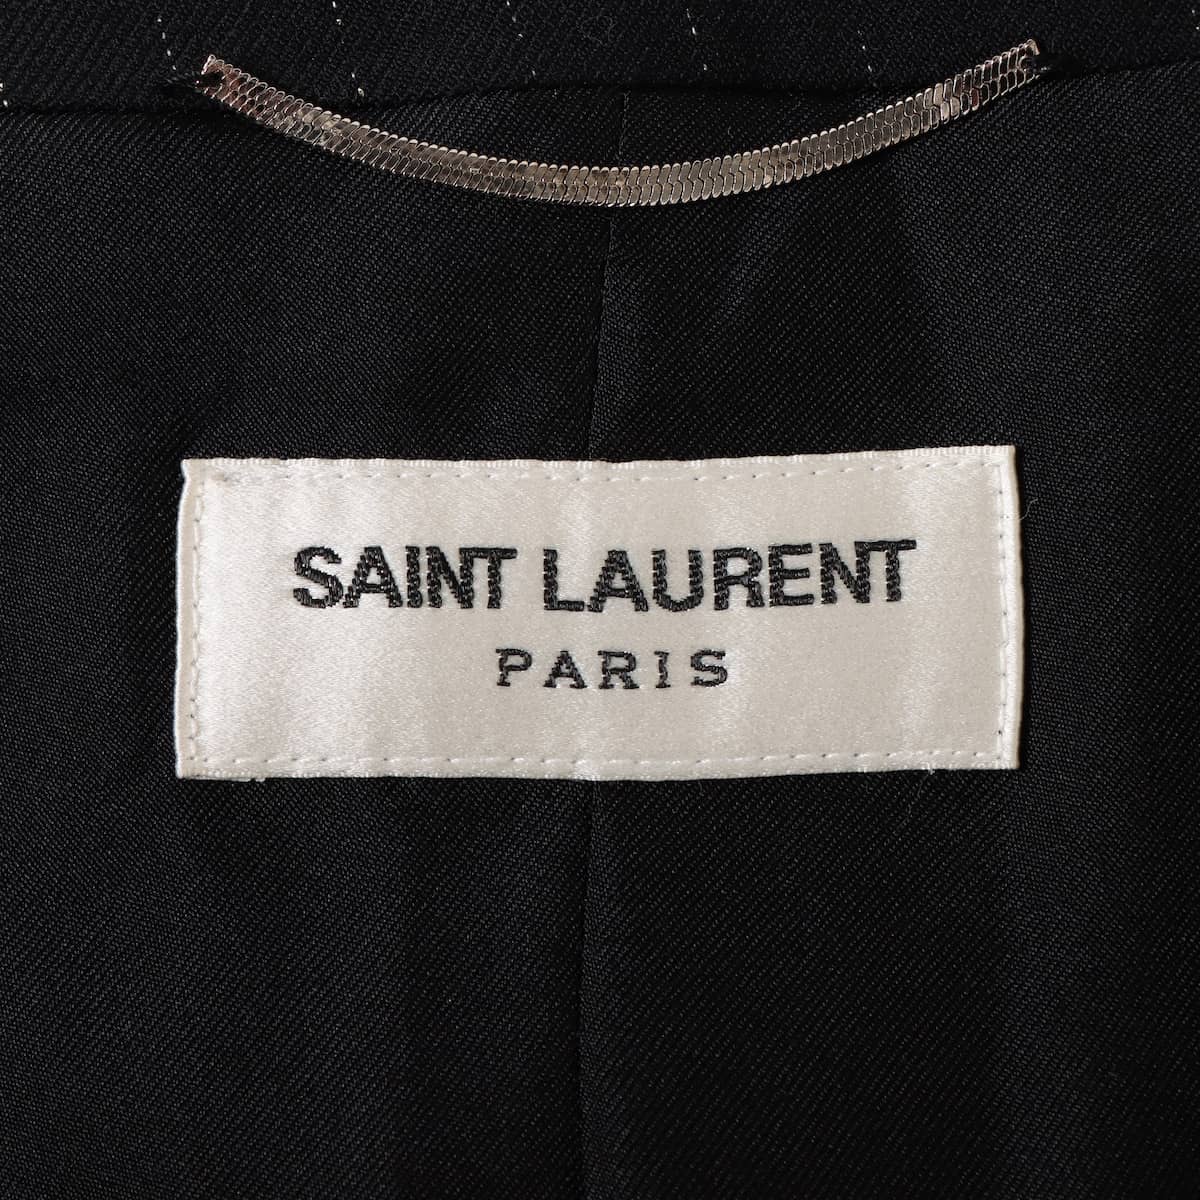 SAINT LAURENT PARIS テーラードジャケット 48(L位)